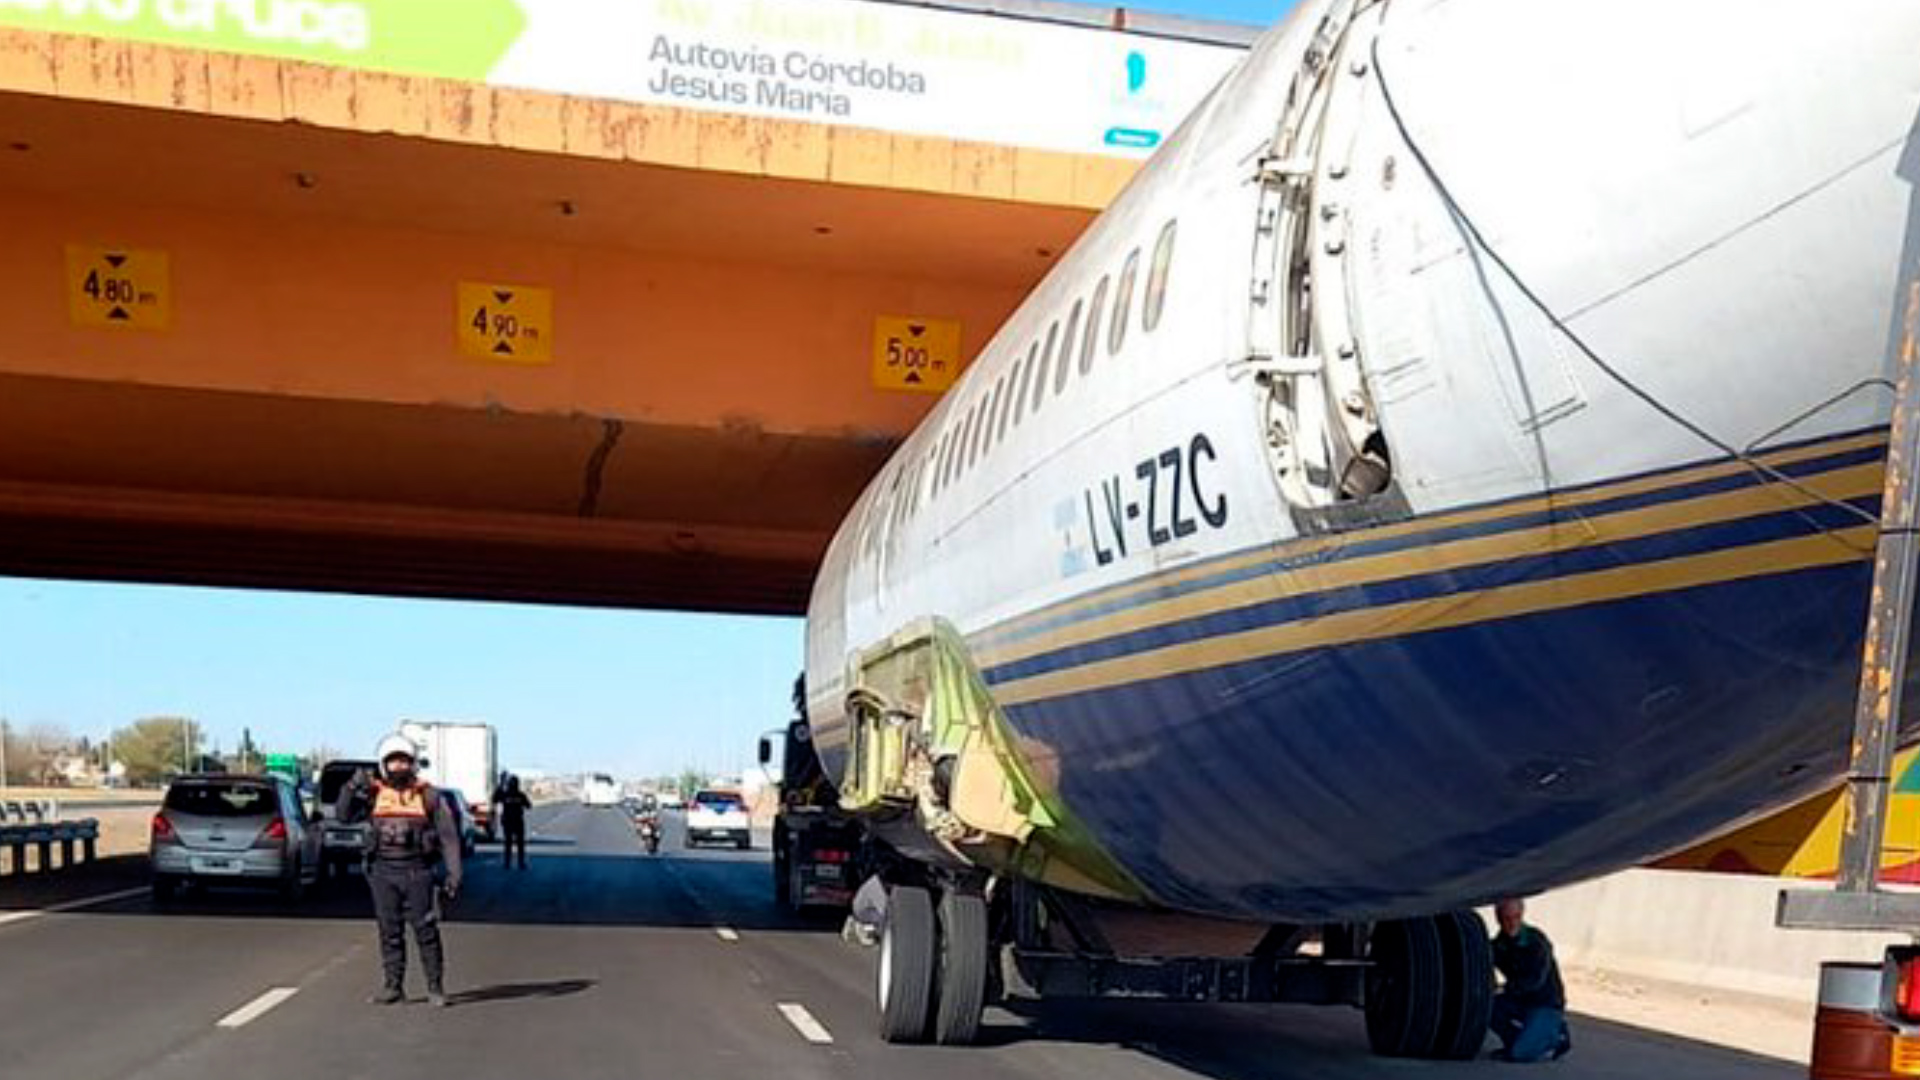 El avión atascado en un puente de la ciudad de Córdoba fue trasladado a Oncativo, donde se espera que funcione como un boliche y bar temático. (Twitter)